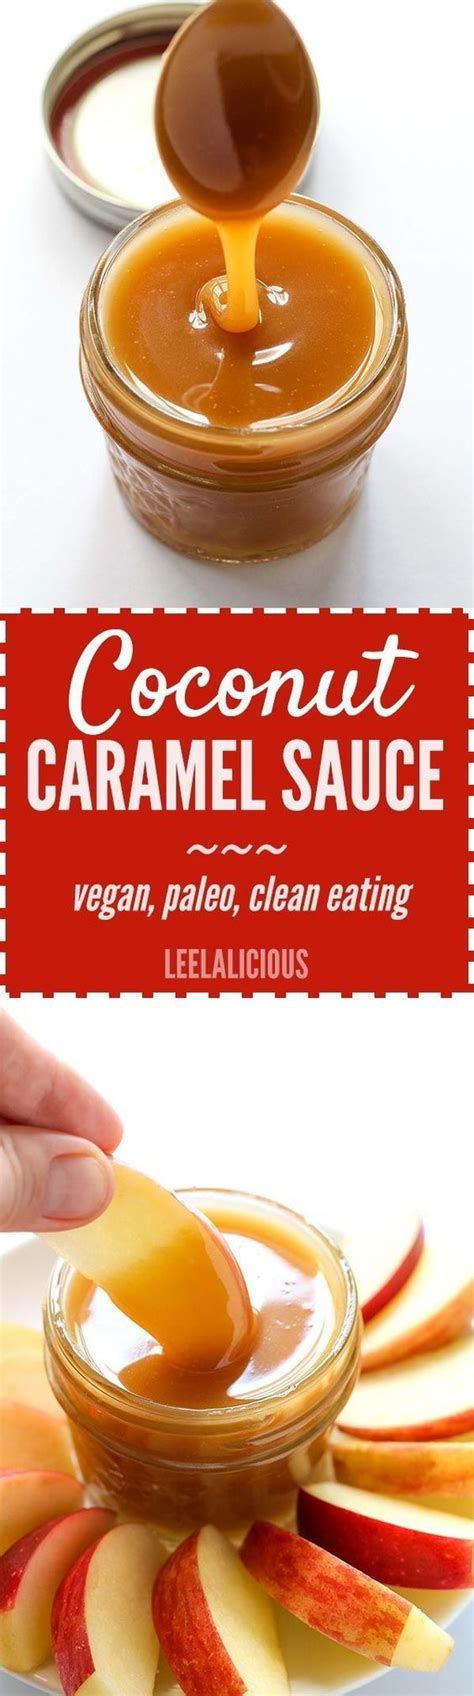 How To Make Vegan Caramel Sauce Leelalicious Vegan Caramel Recipes